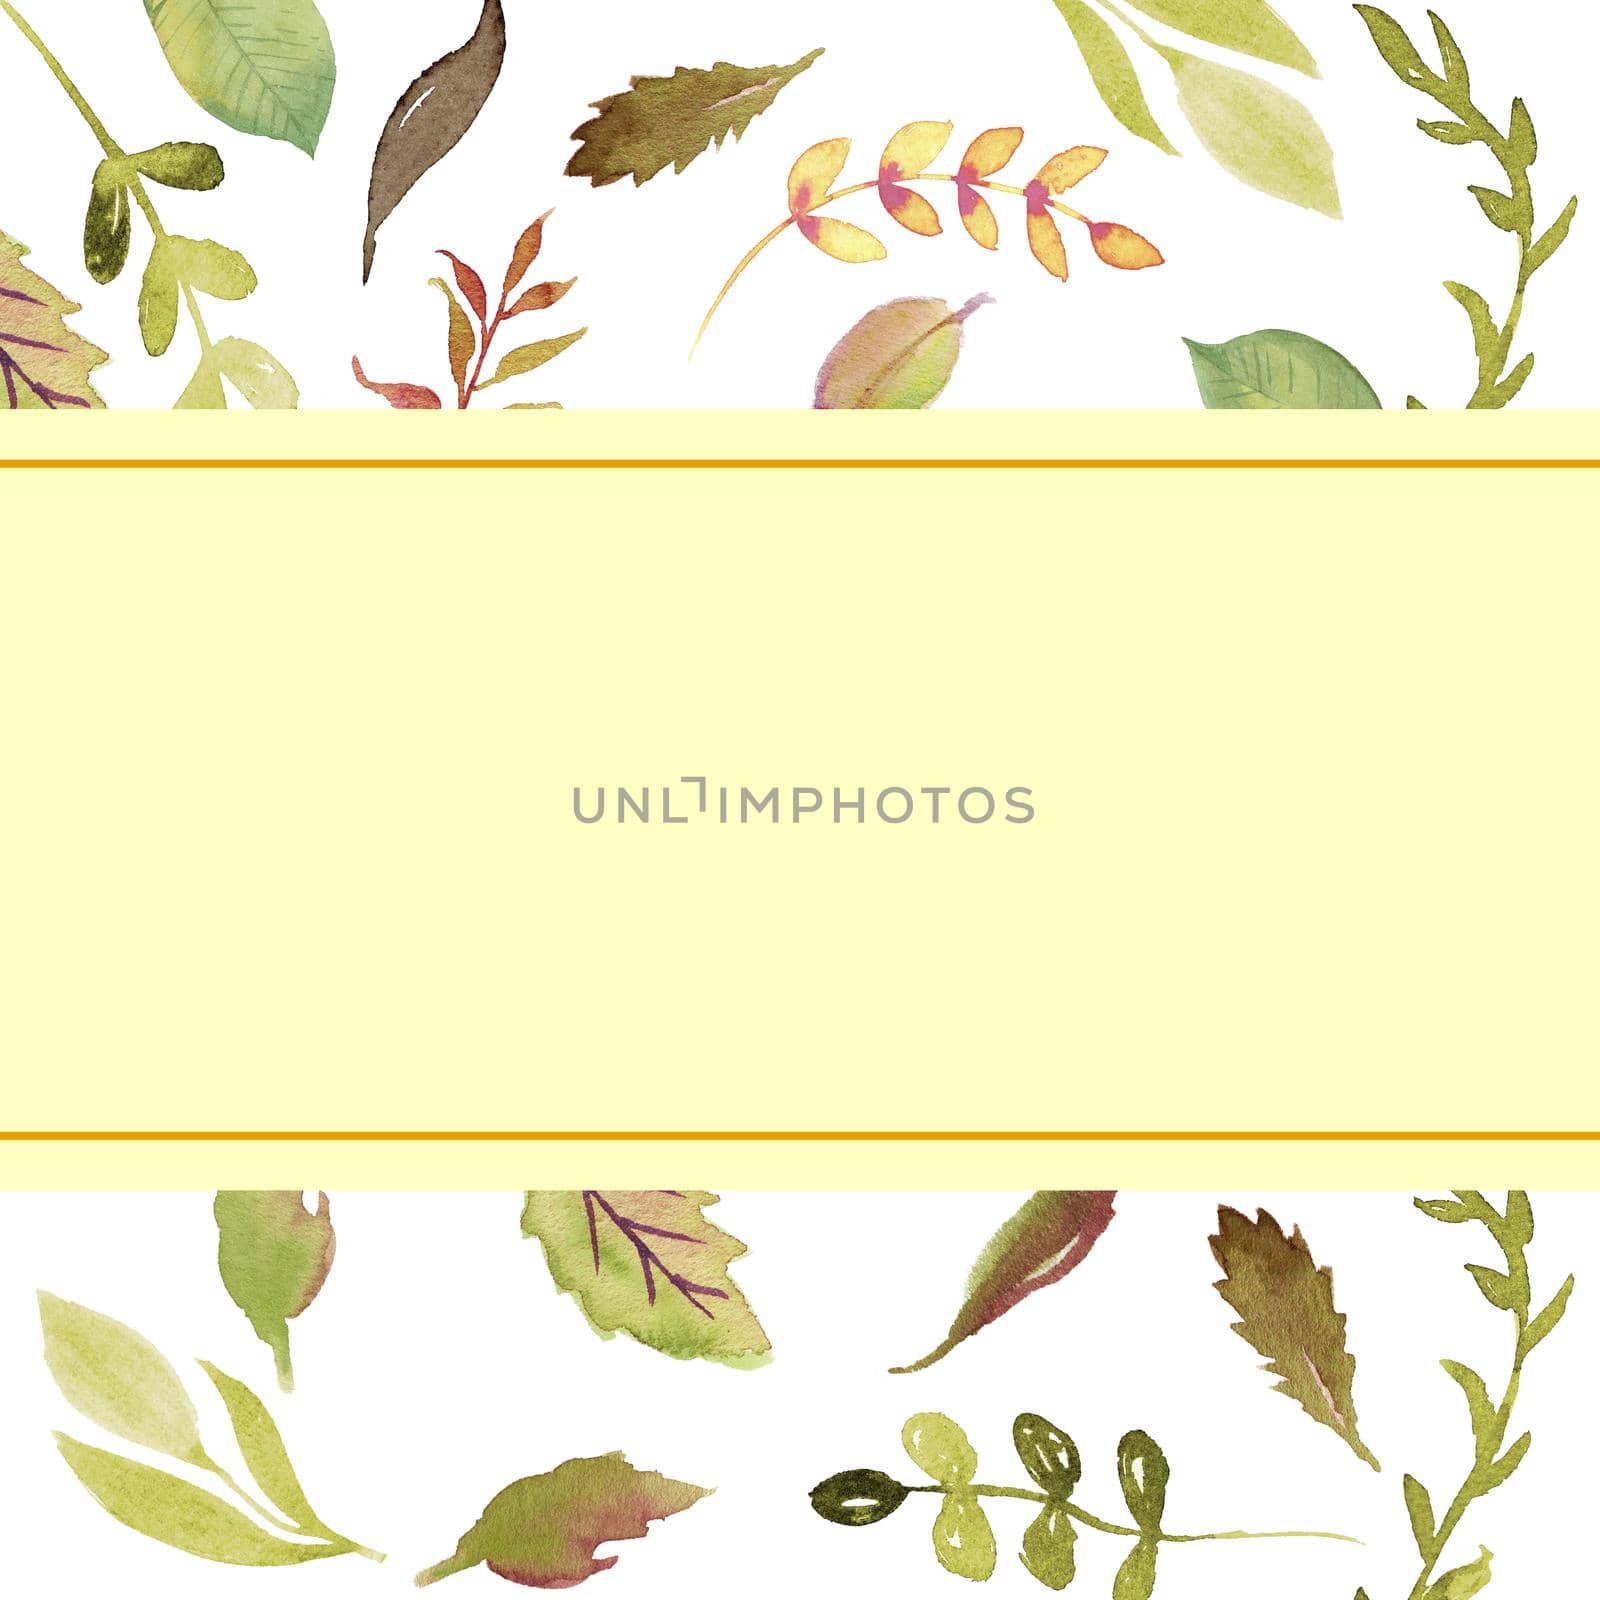 watercolor flower frame backgrounds. Floral geometric design frame. Summer wedding card